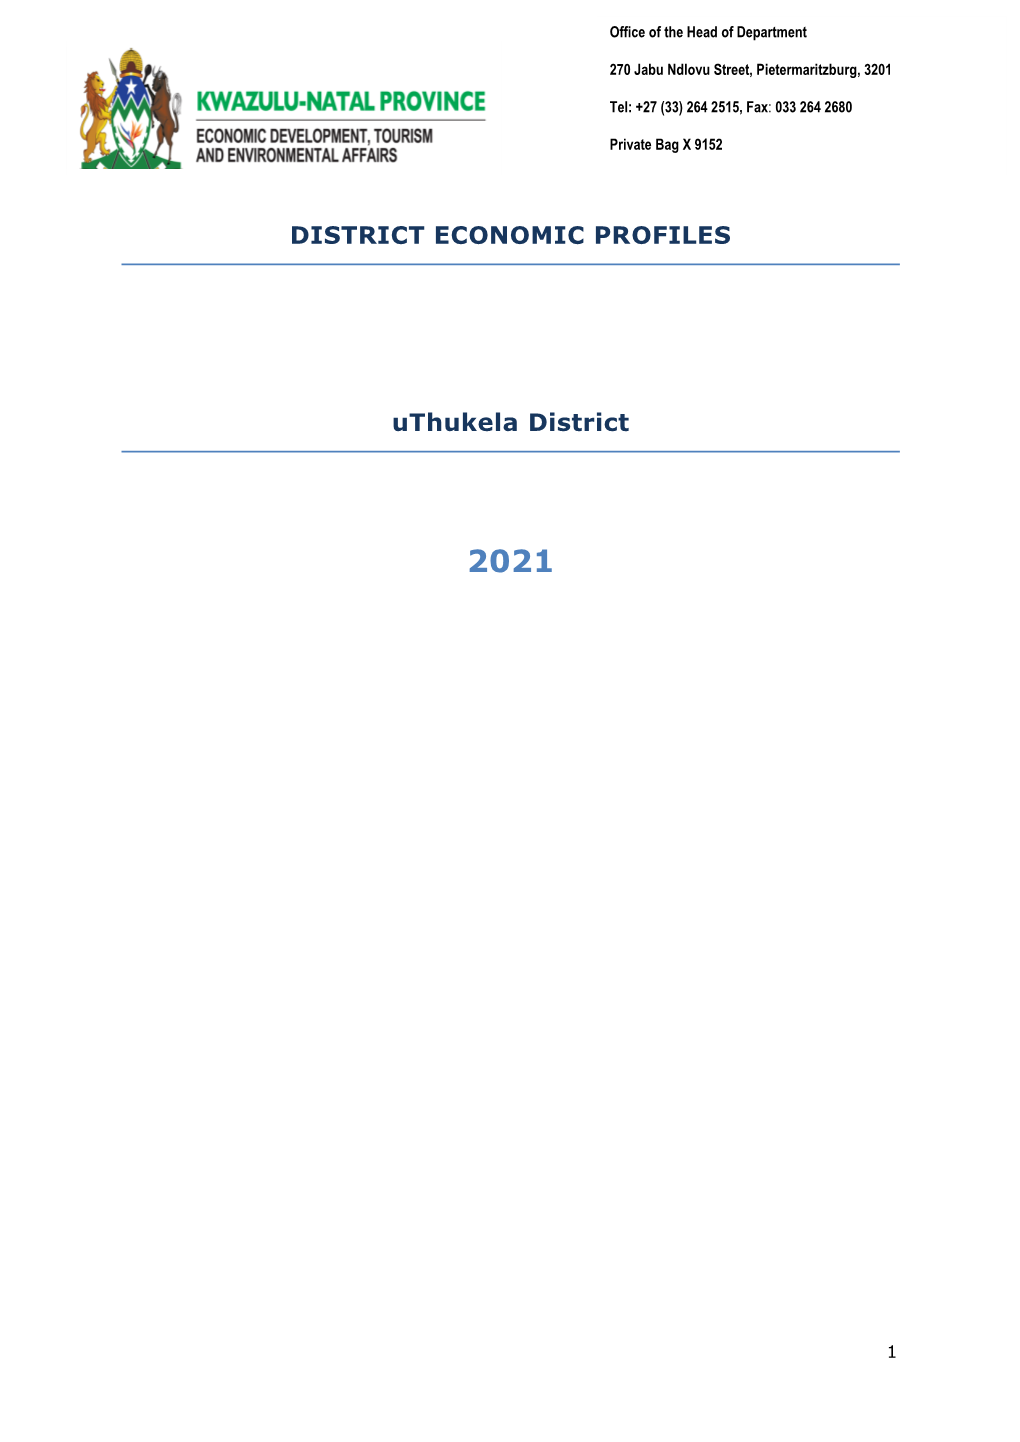 DISTRICT ECONOMIC PROFILES Uthukela District